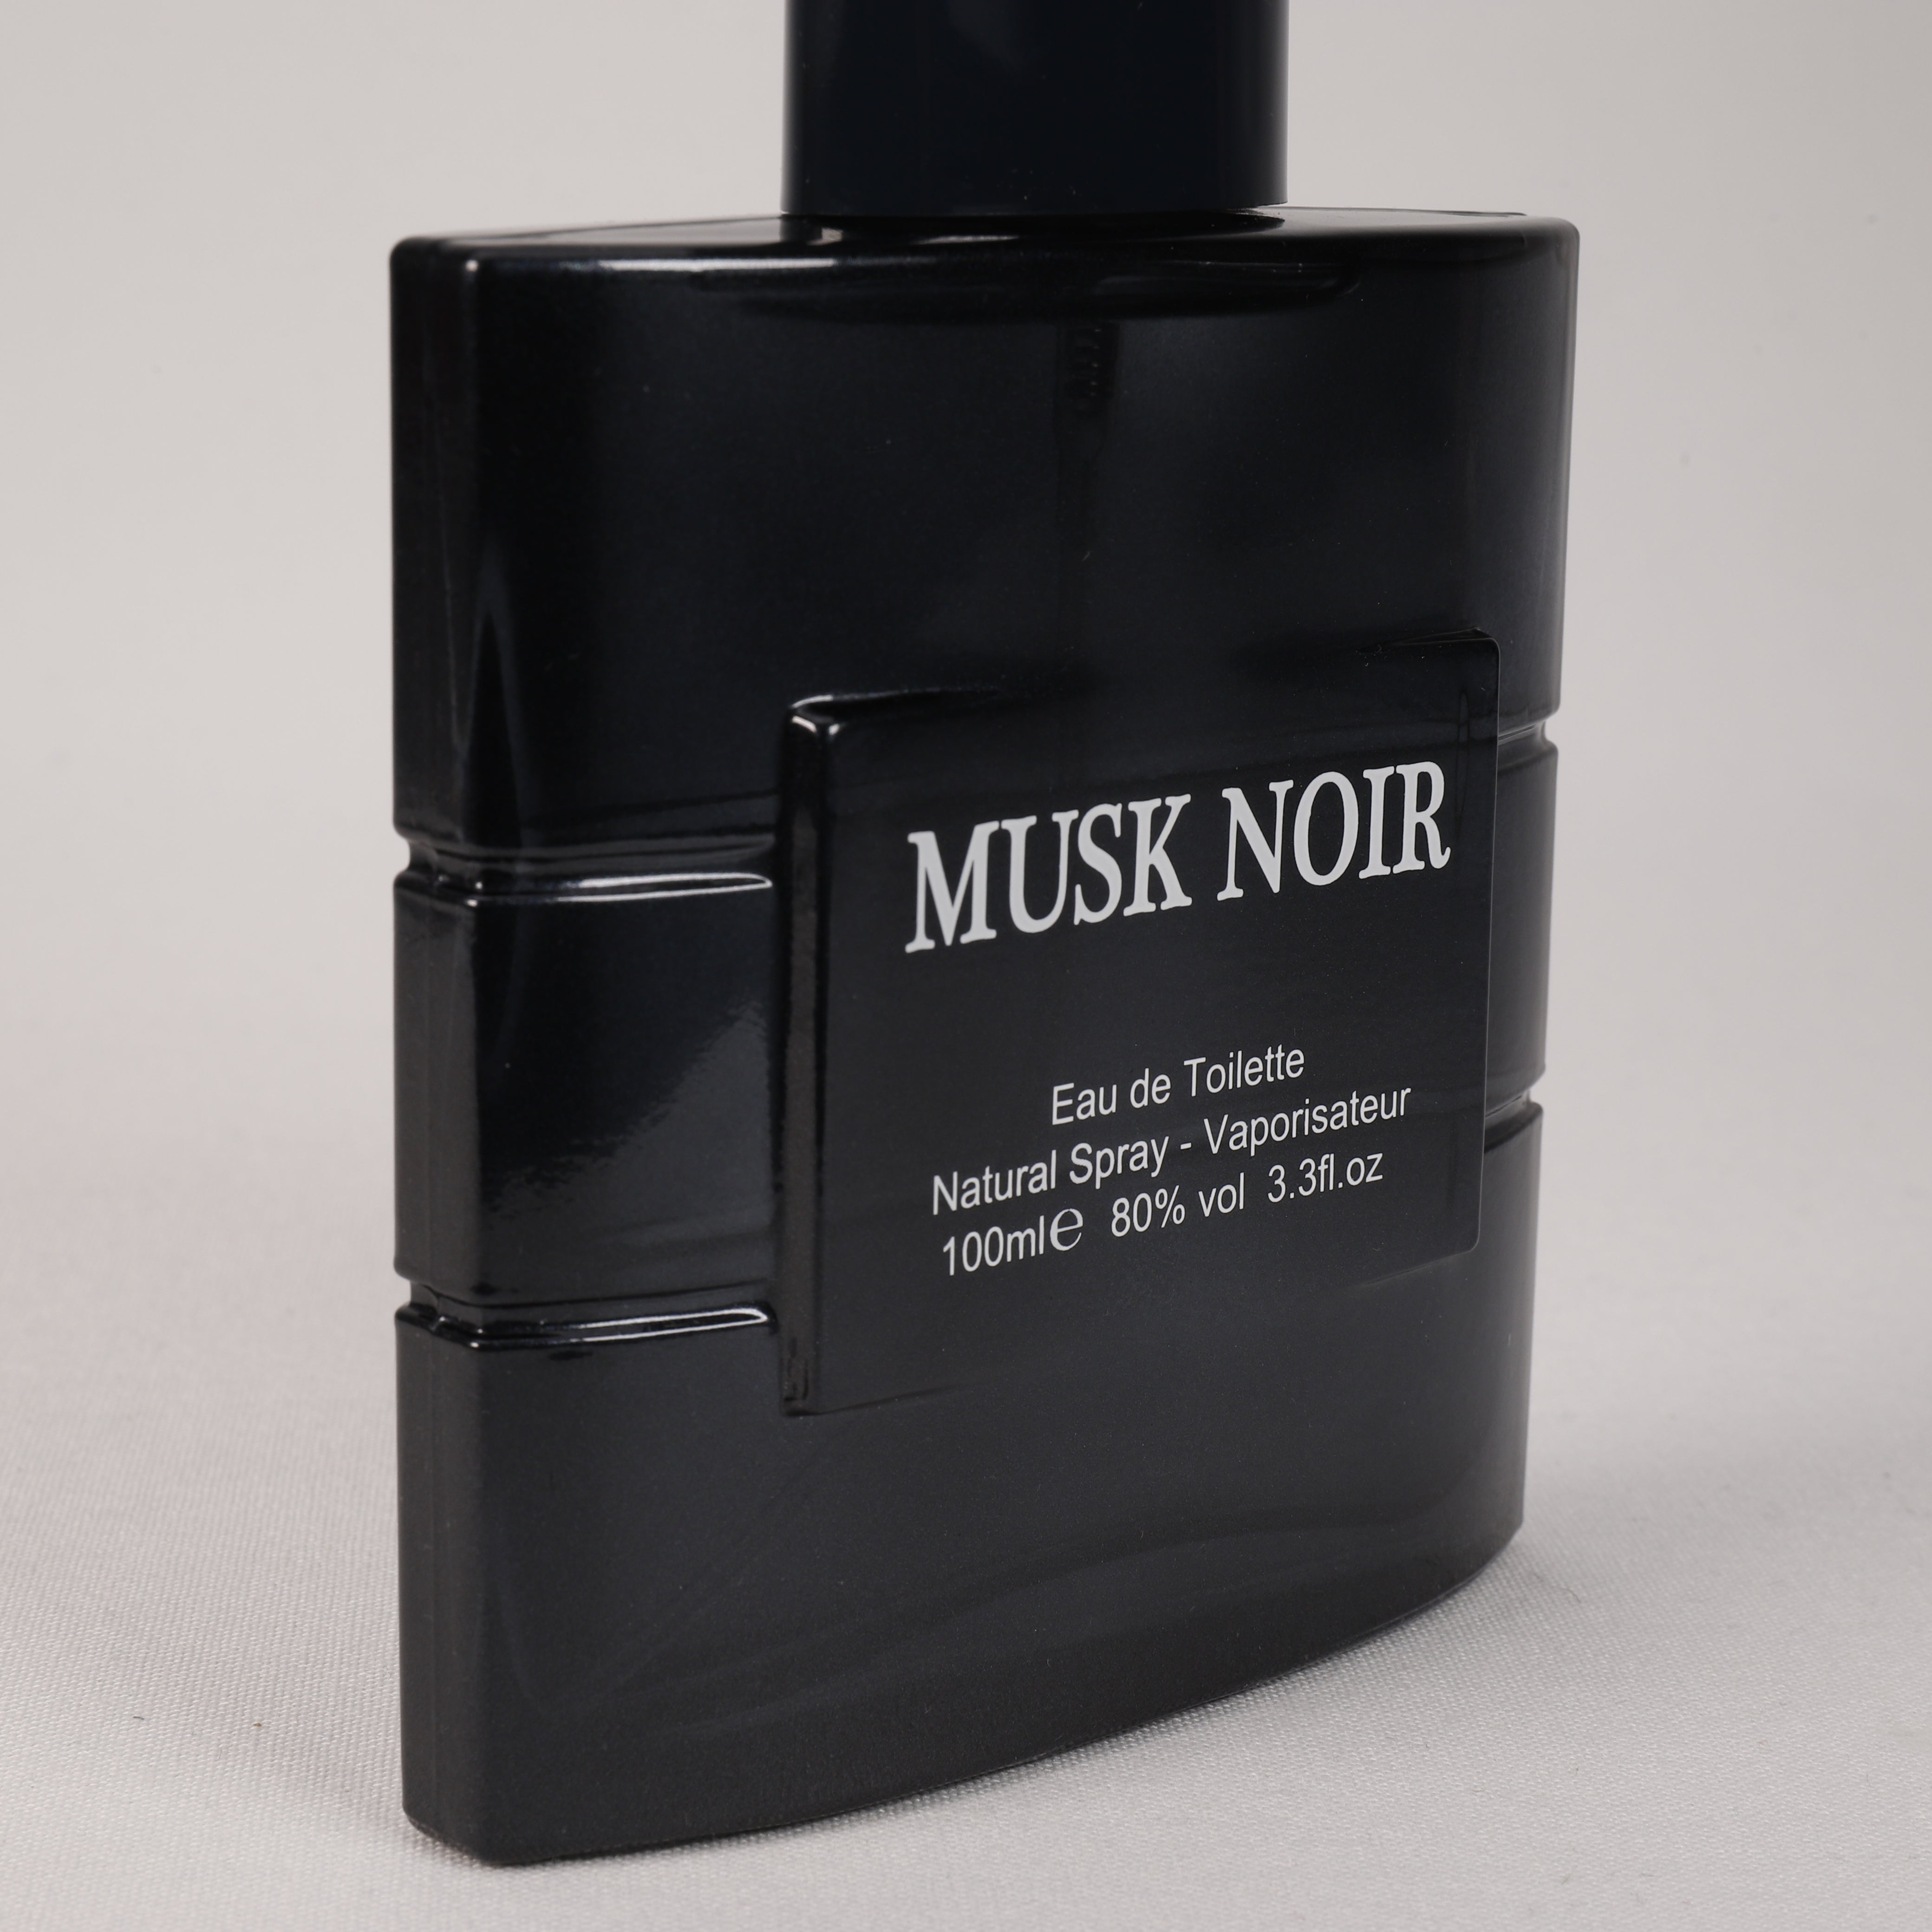 Musk Noir, Schwarzer Moschus, Vaporizer mit natürlichem Spray, 100 ml, Duft, TOP Parfüm Musk, NEU